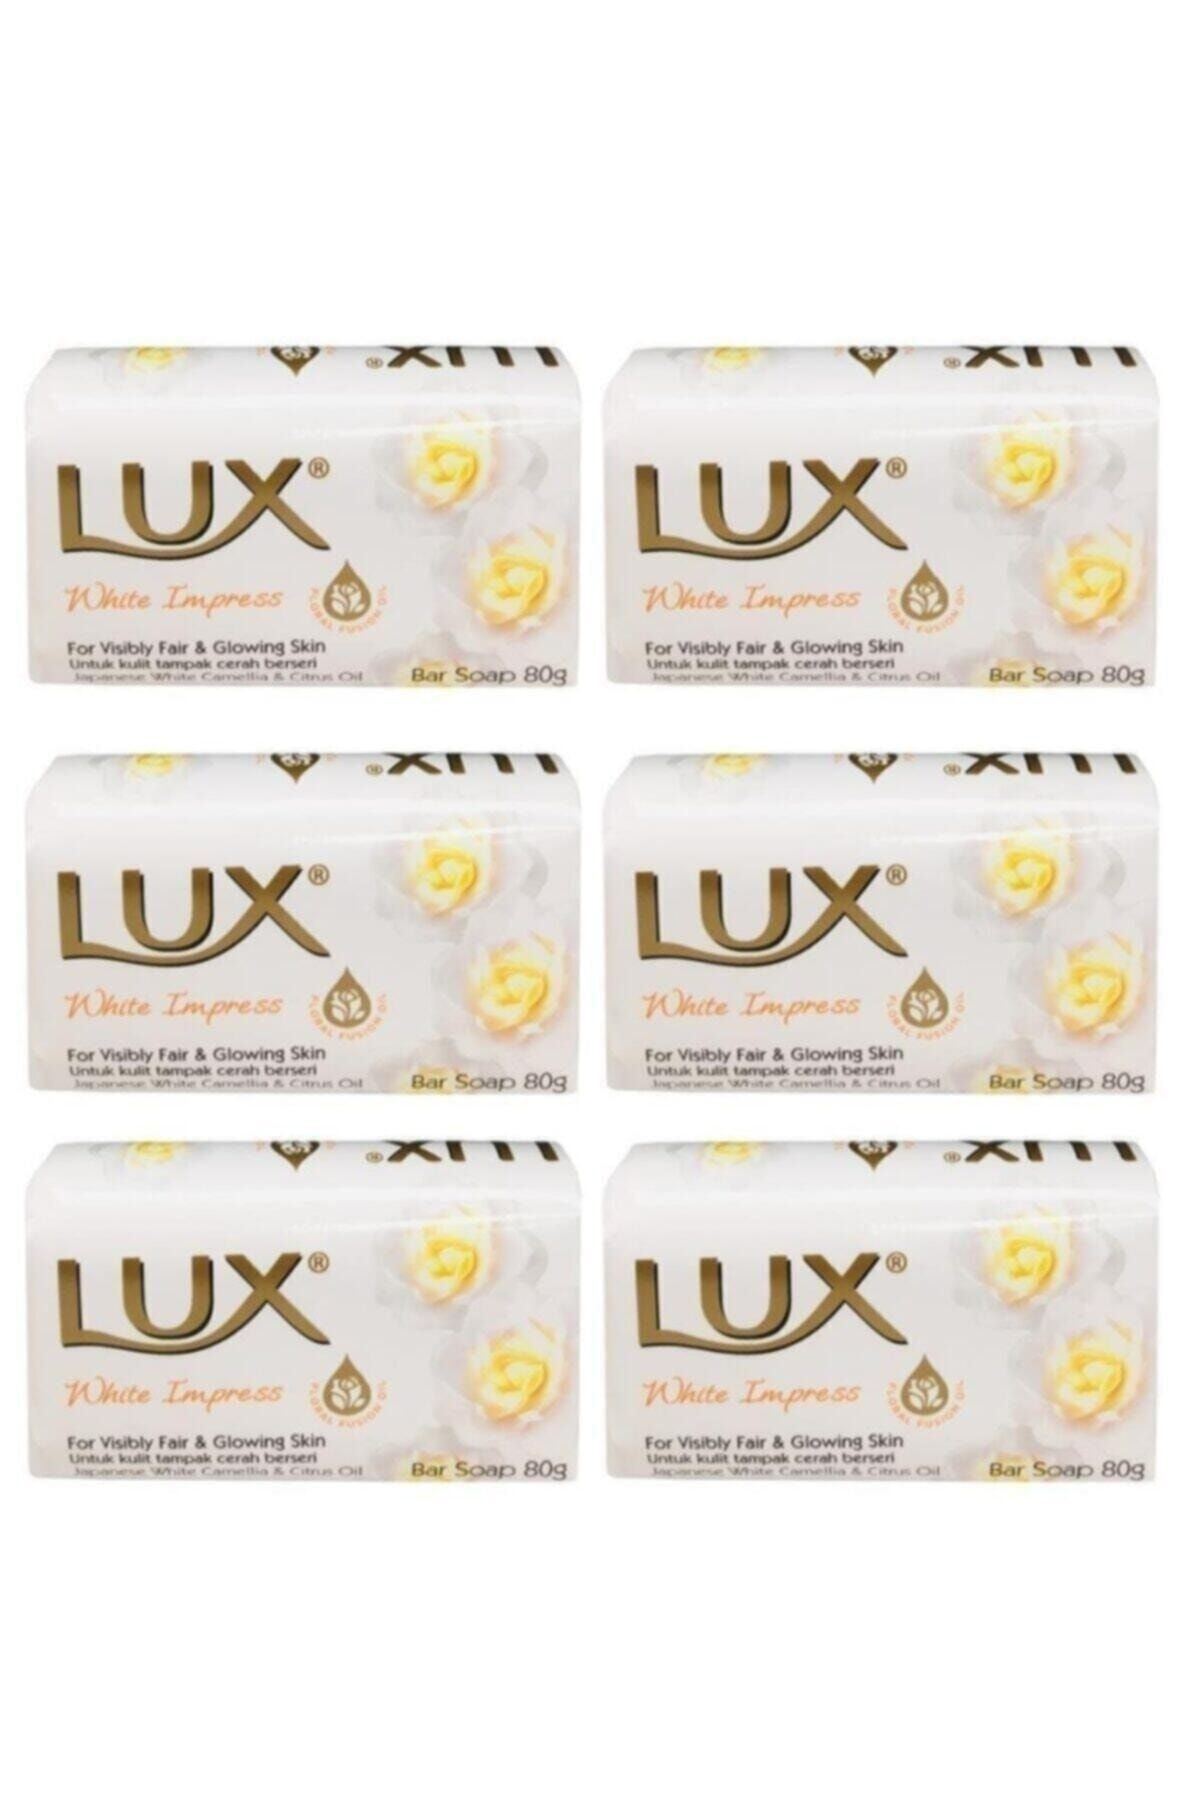 LUX Lüx Sargılı Sabun 80gr. 6lı - 480gr. White Impress